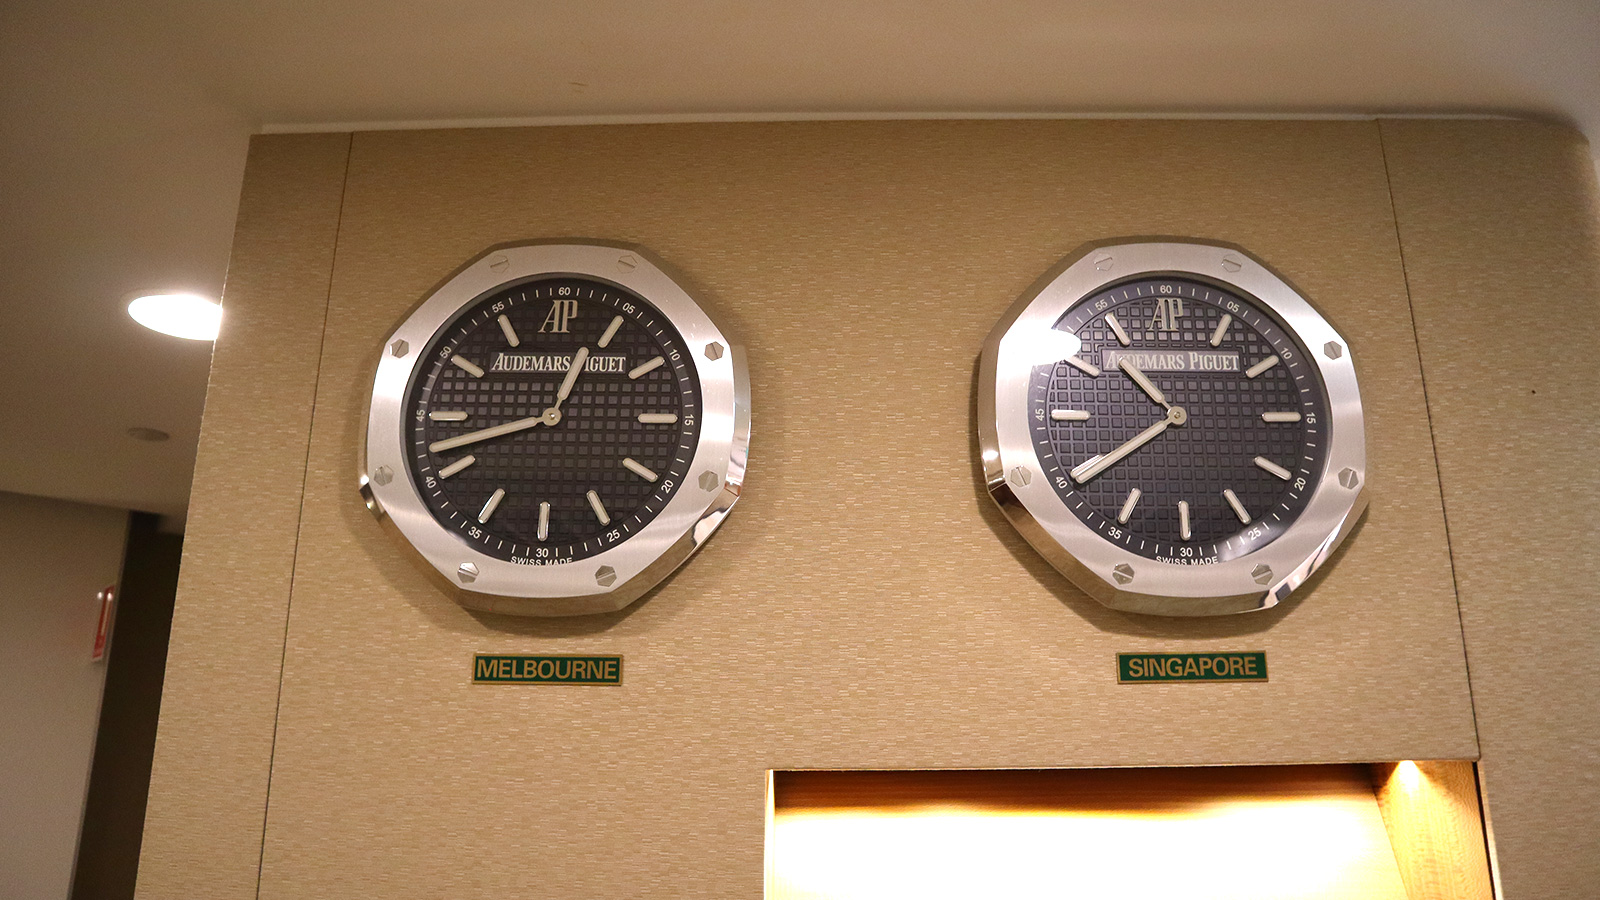 Audemars Piguet clocks inside the Singapore Airlines SilverKris First Class Lounge Melbourne